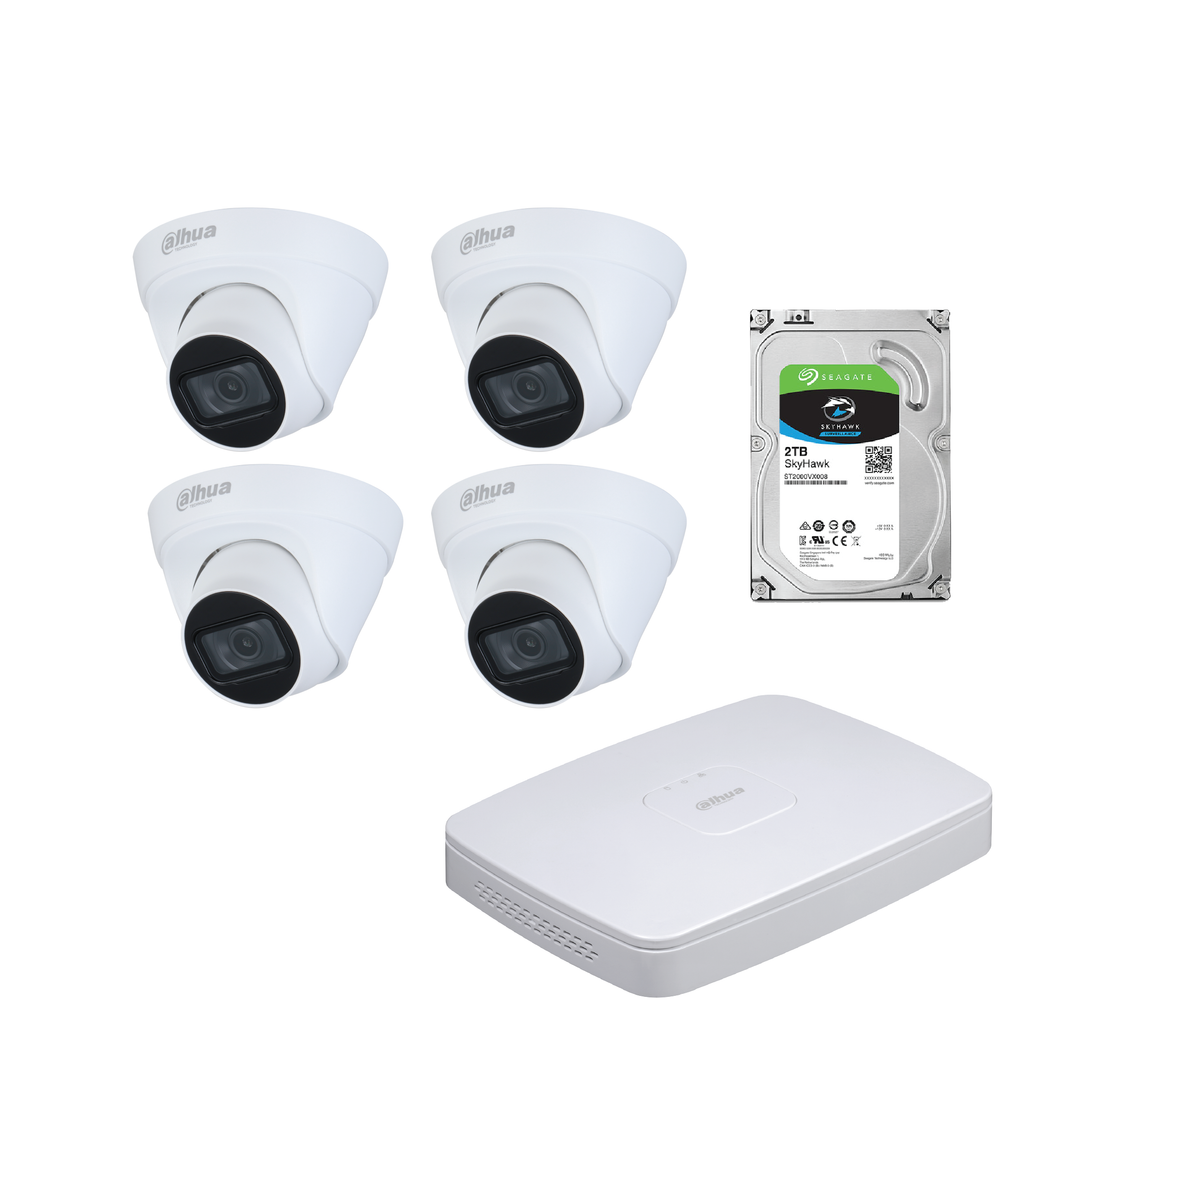 Dahua 4MP CCTV Kit:  - 1 x NVR 4108HS-8P-4KS2T  - 4 x HDW 1431 T1-S4  - 1 x 2TB HDD